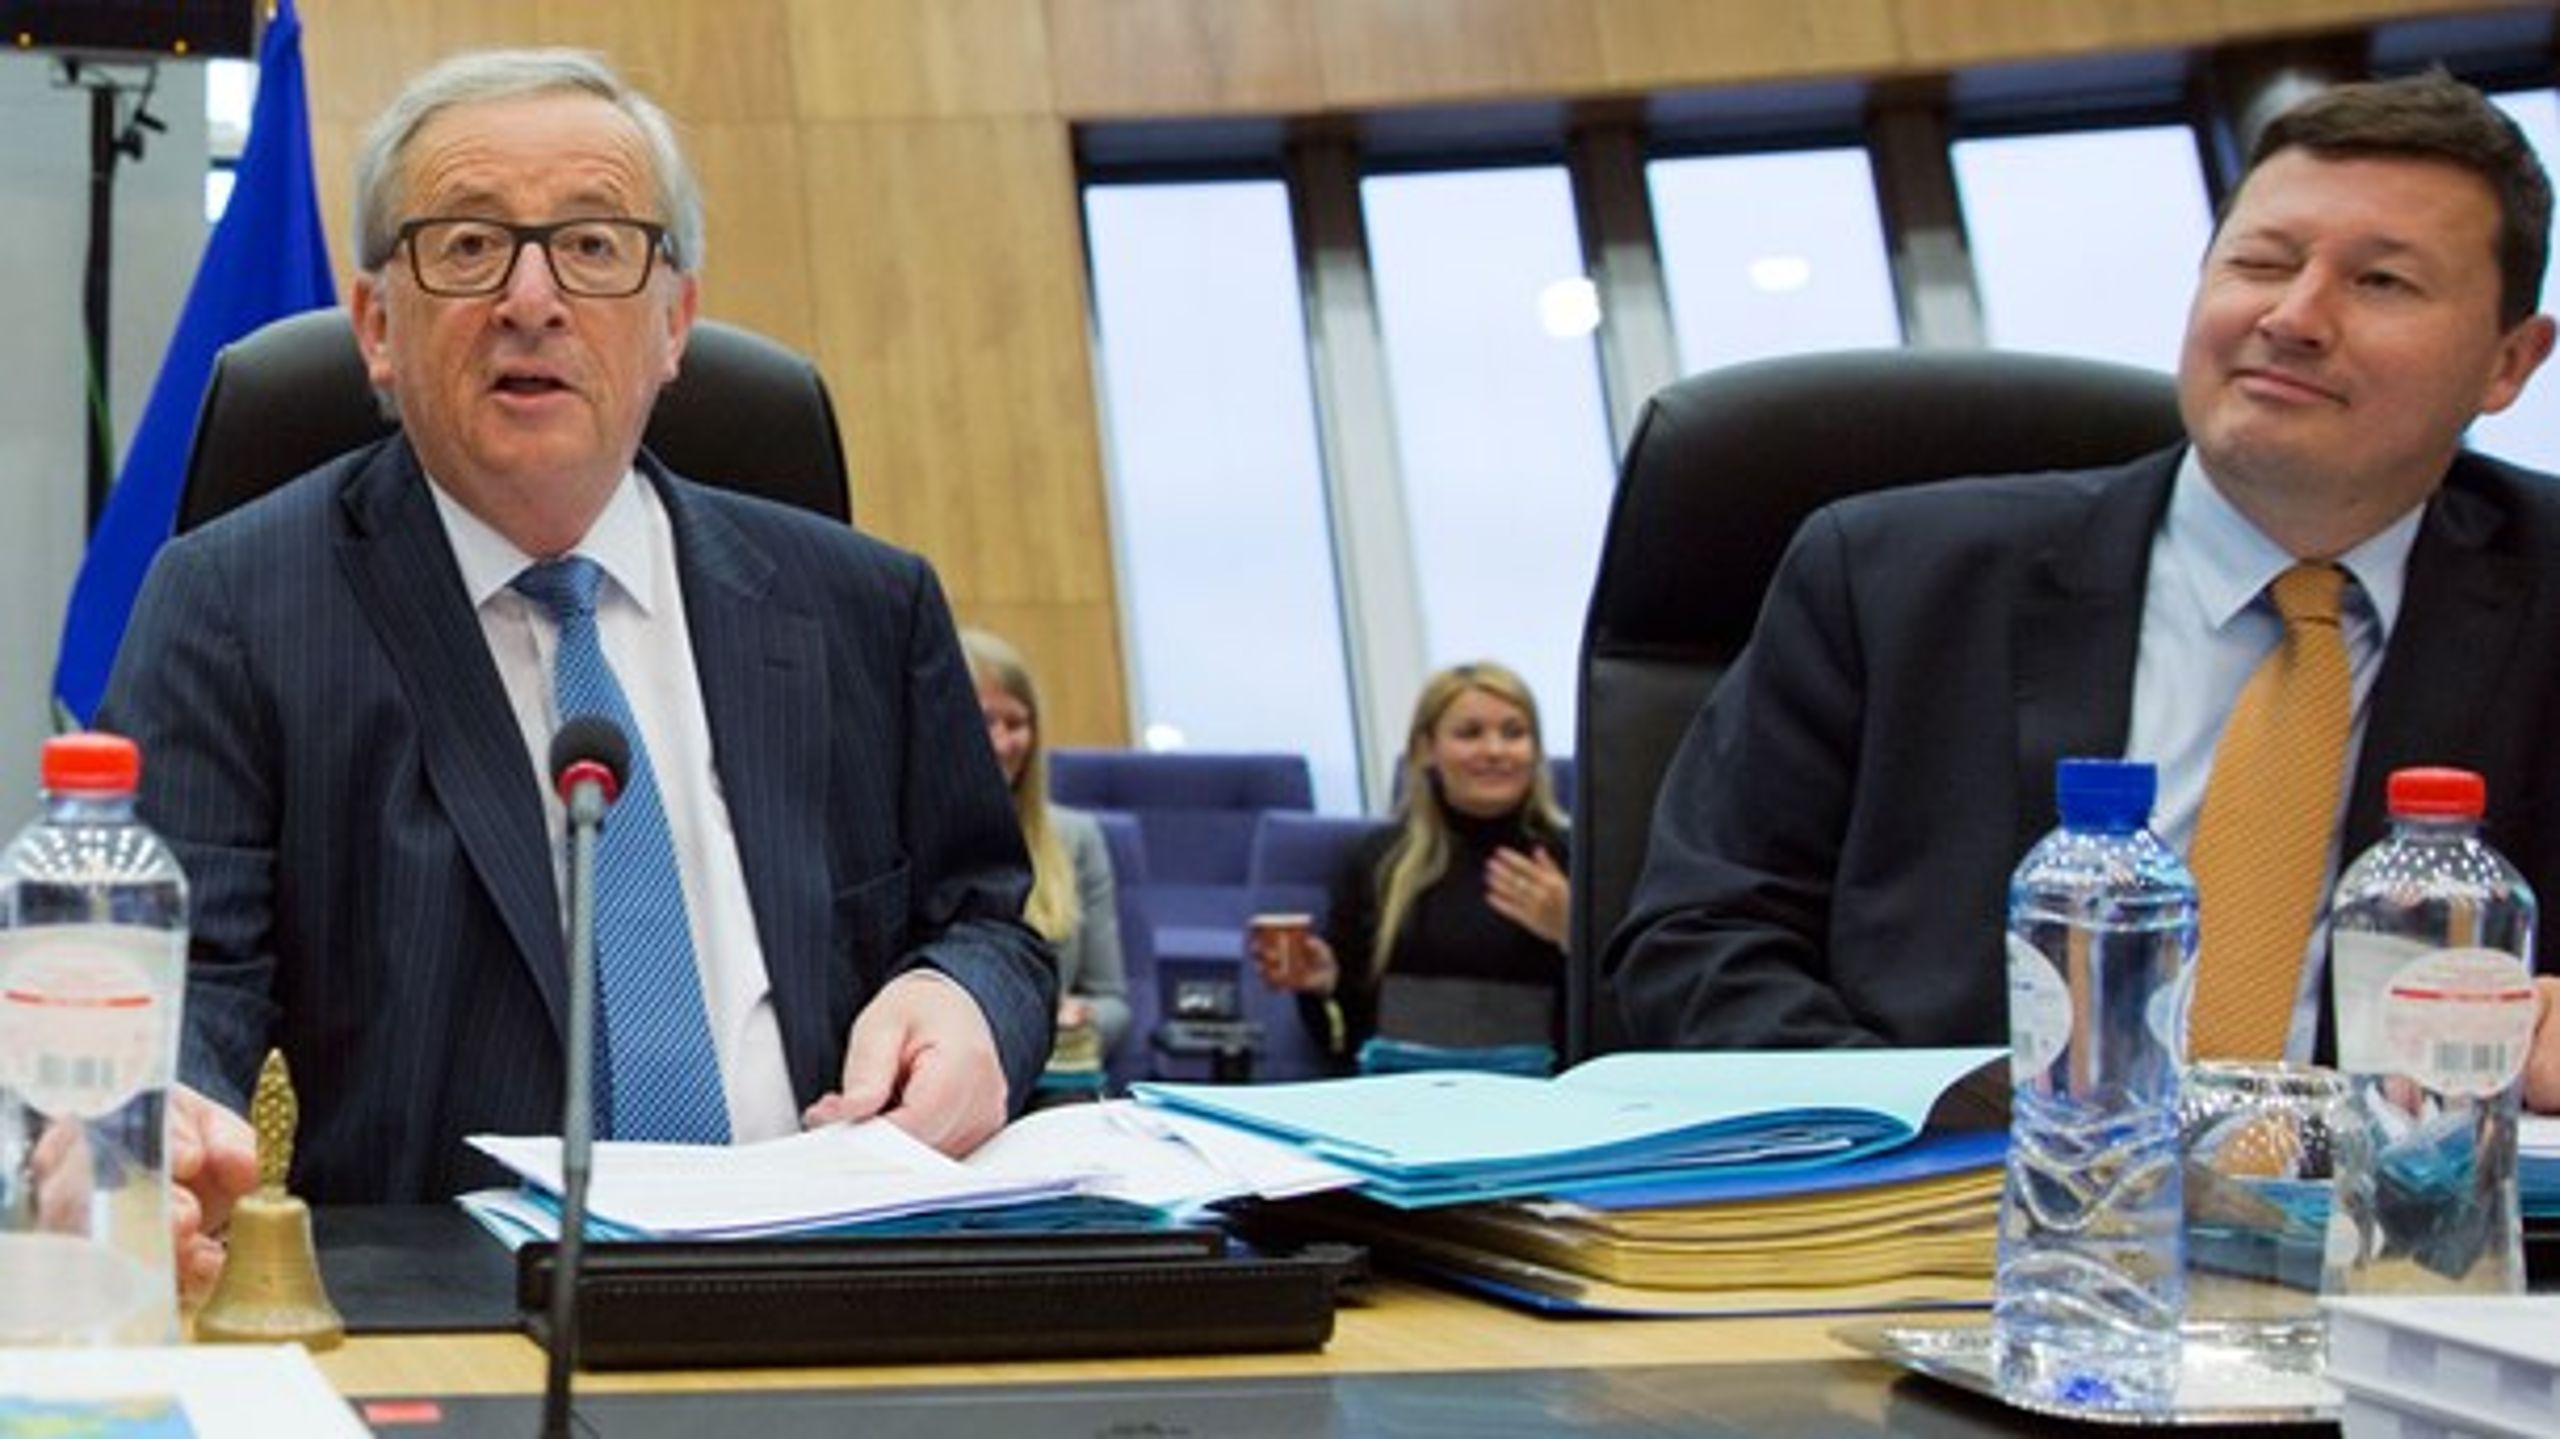 Kup, hvad for et kup? EU-Kommissionens formand, Jean-Claude Juncker, afviser pure at have omgået reglerne for at skubbe sin politiske toprådgiver, Martin Selmayr (t.h.) til tops i embedsværket. Men EU's ombudskvinde har en anden opfattelse.